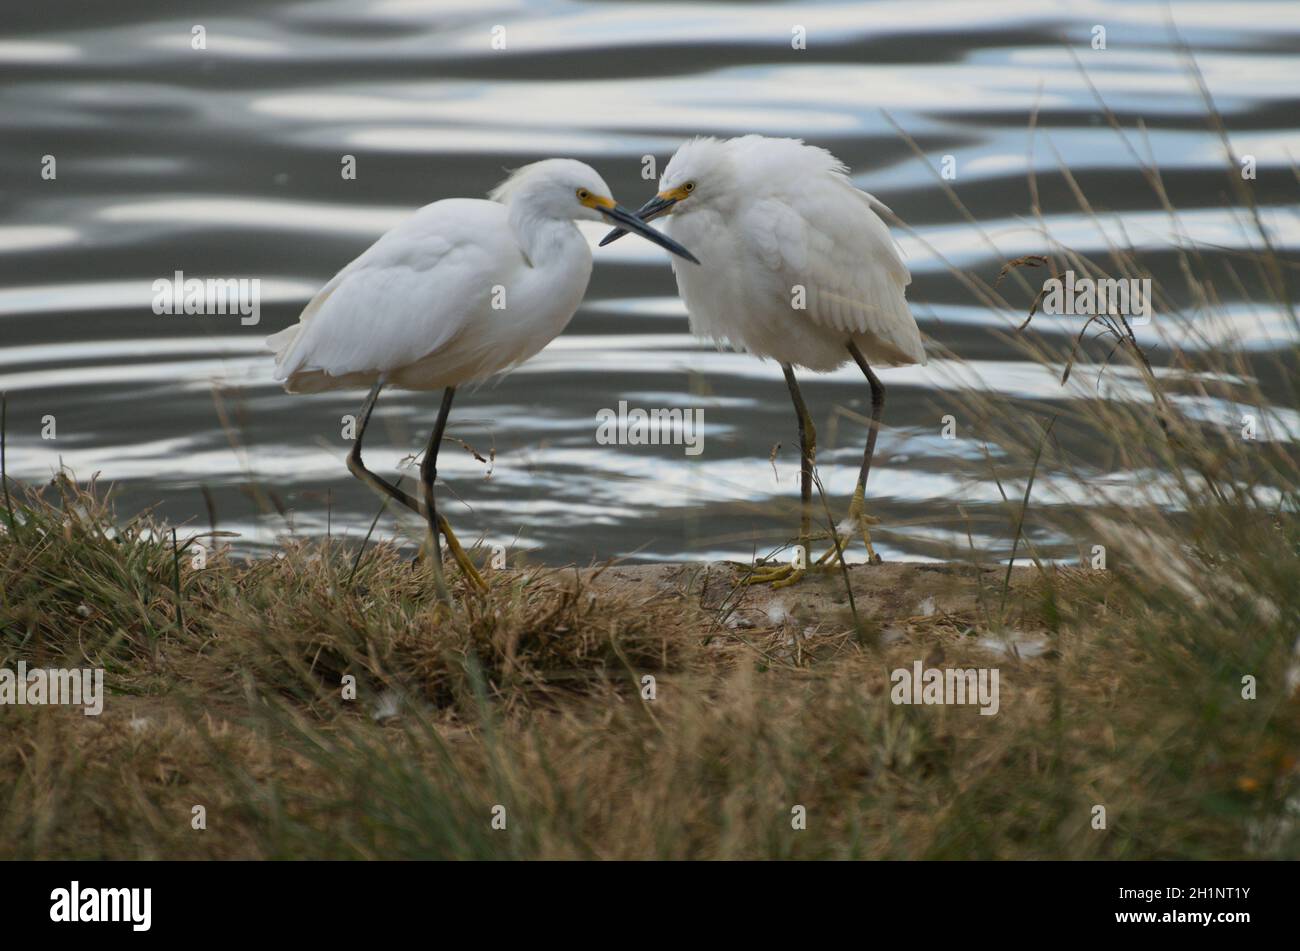 2 aires in piedi nel lago con beaks che attraversano la vicinanza comunicante, compassione di queste bellezze esotiche di fauna selvatica di uccelli, espressivo & ispirante. Foto Stock